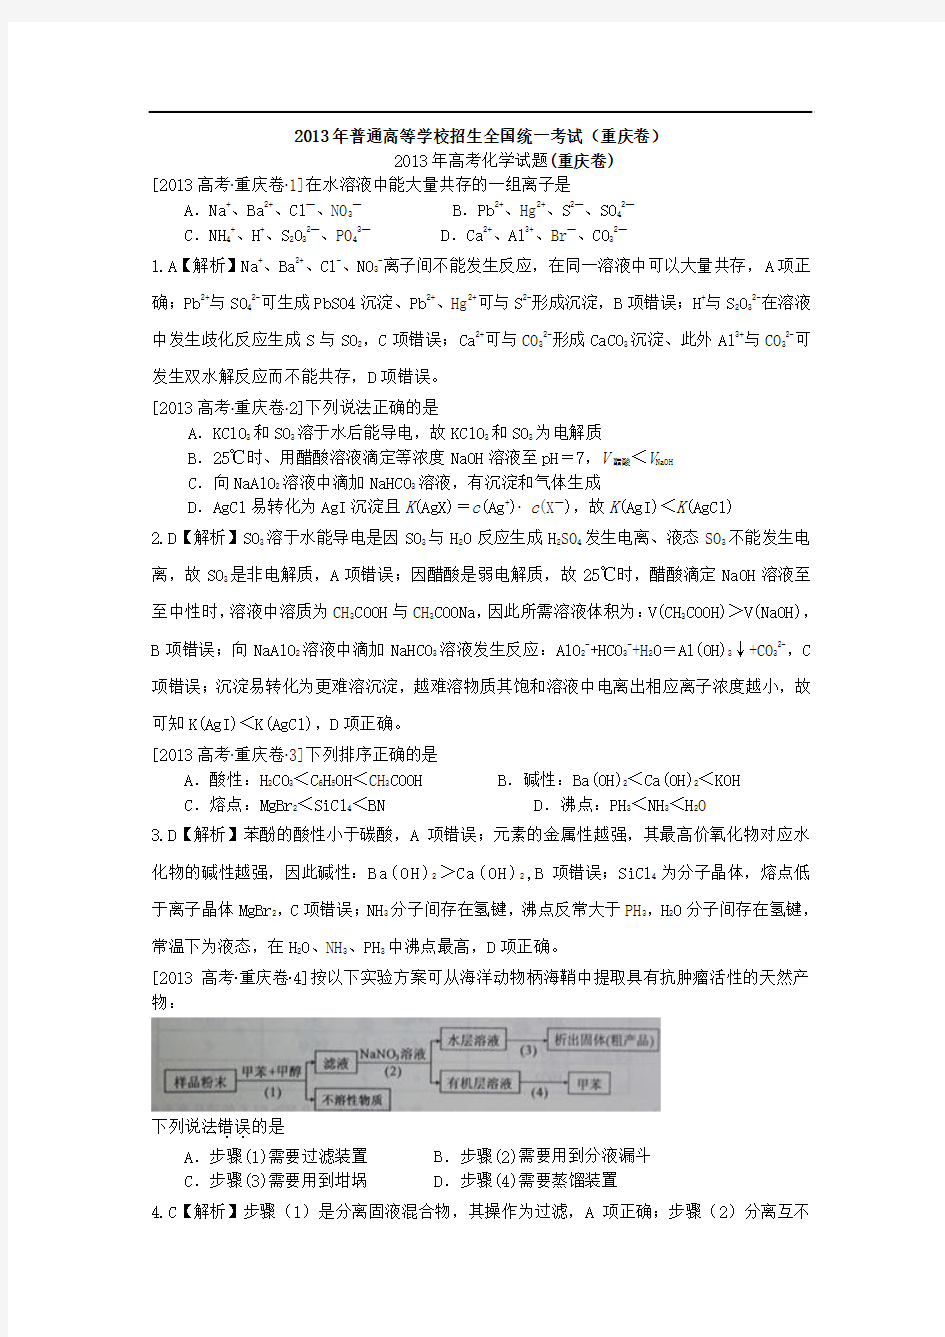 2013年高考真题——理综化学(重庆卷)解析